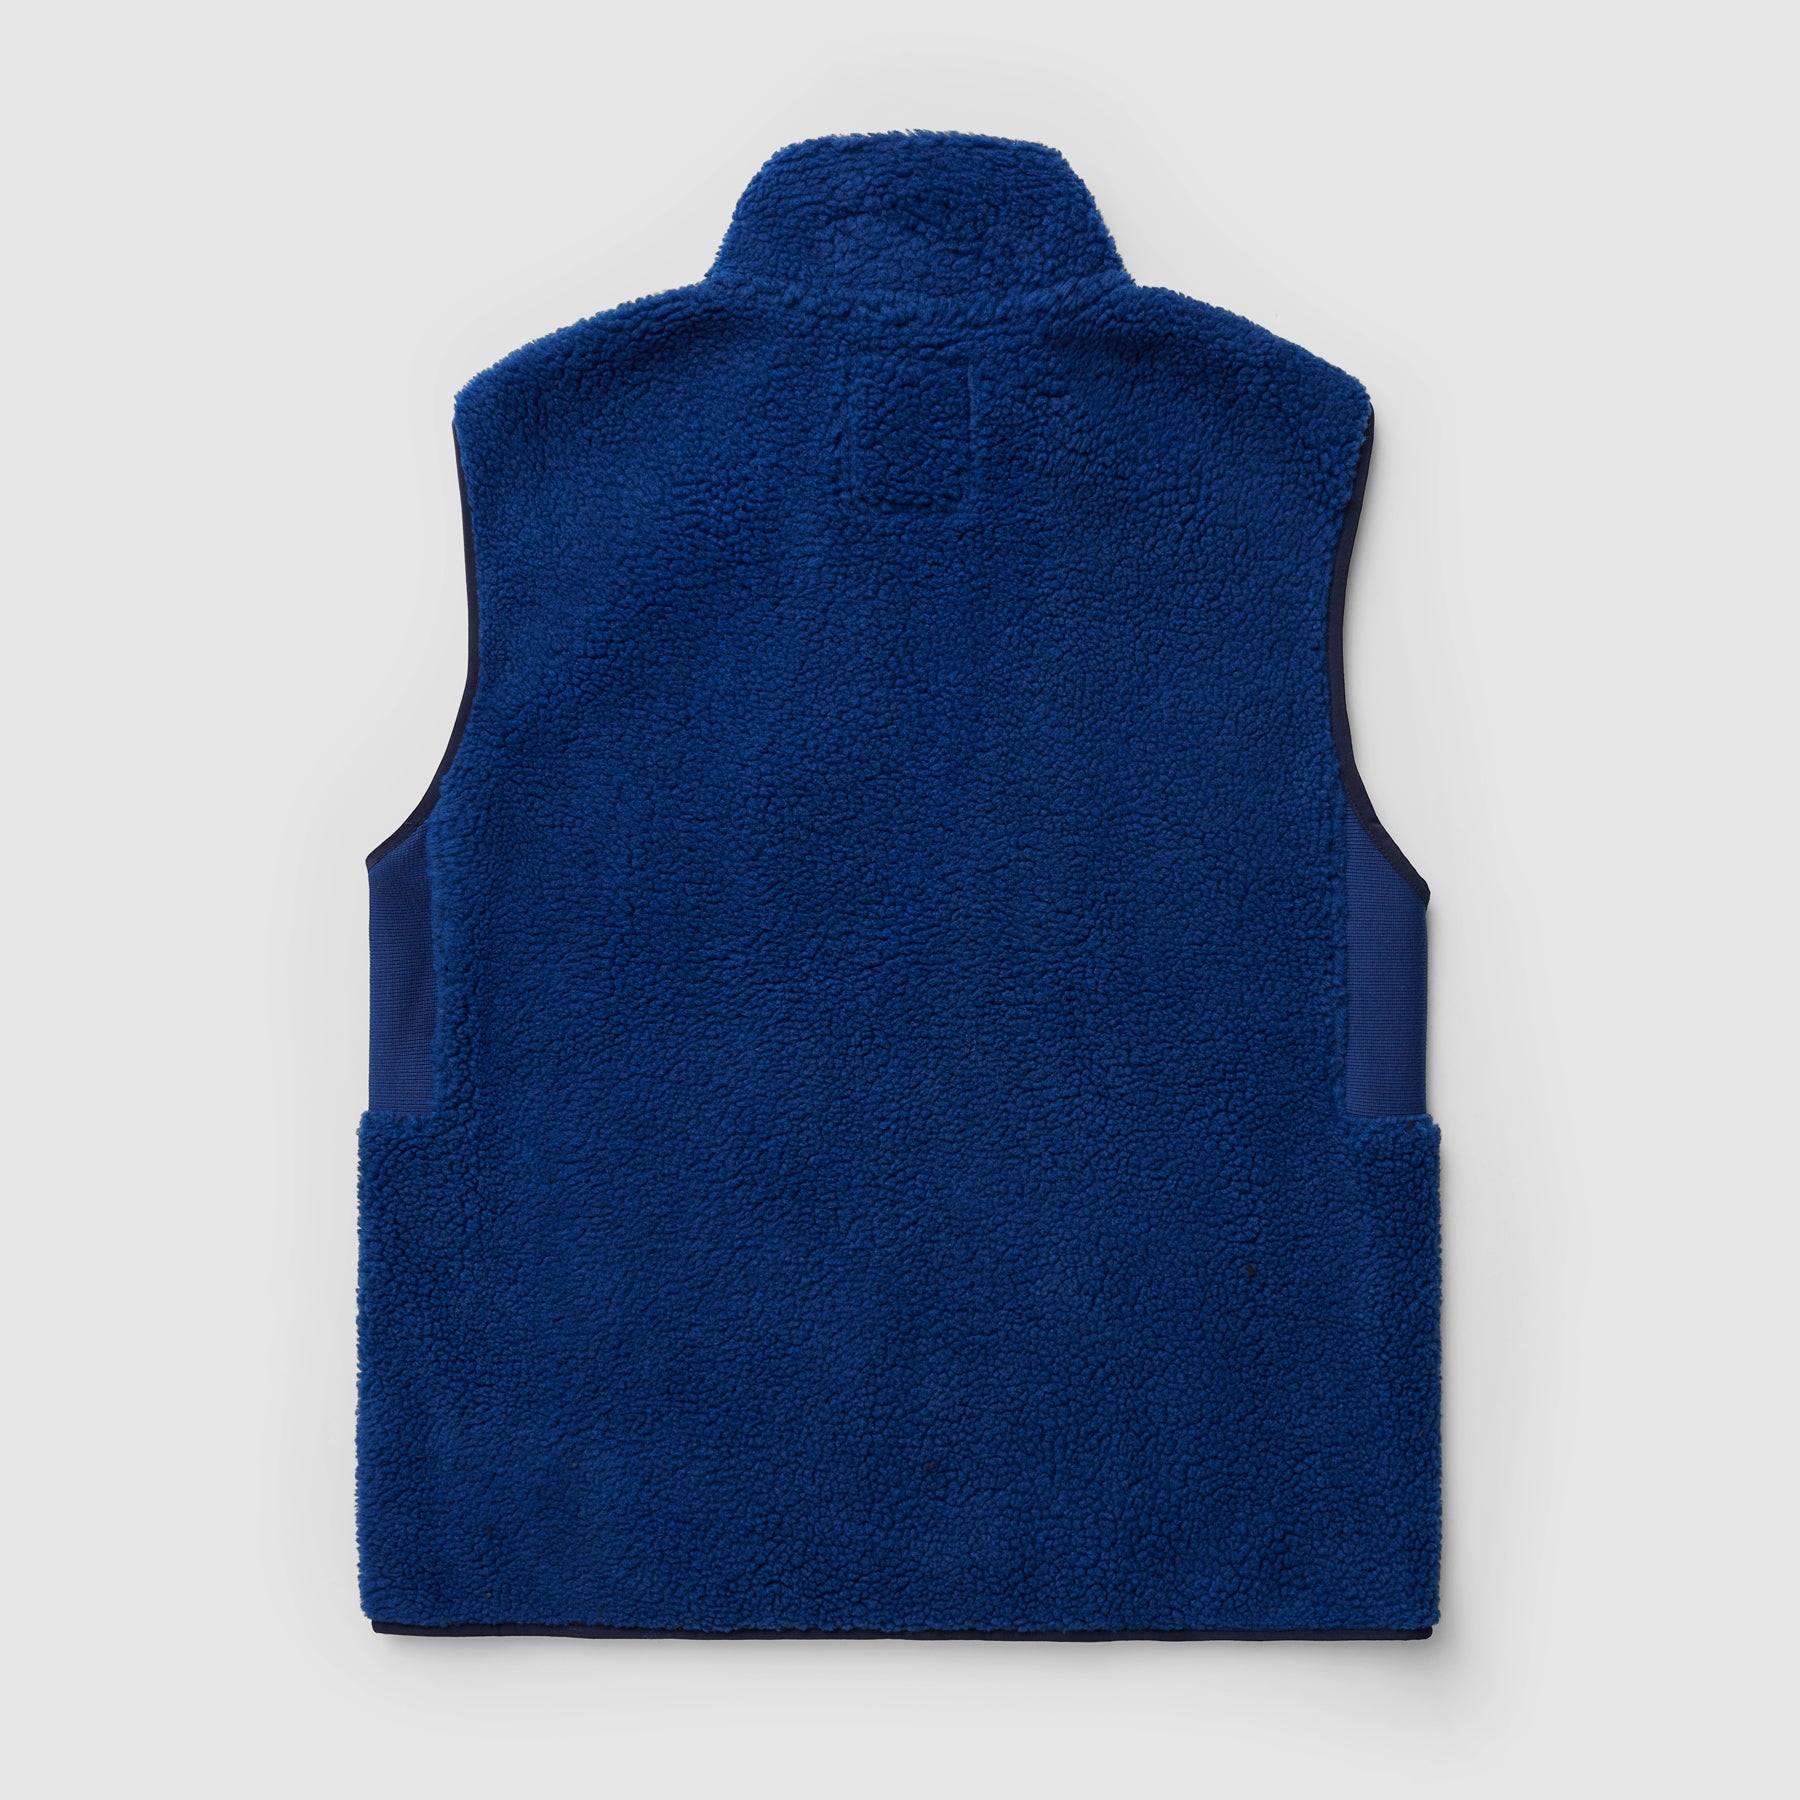 Swing Free Sherpa Vest (Full Zip) - Scenic Blue